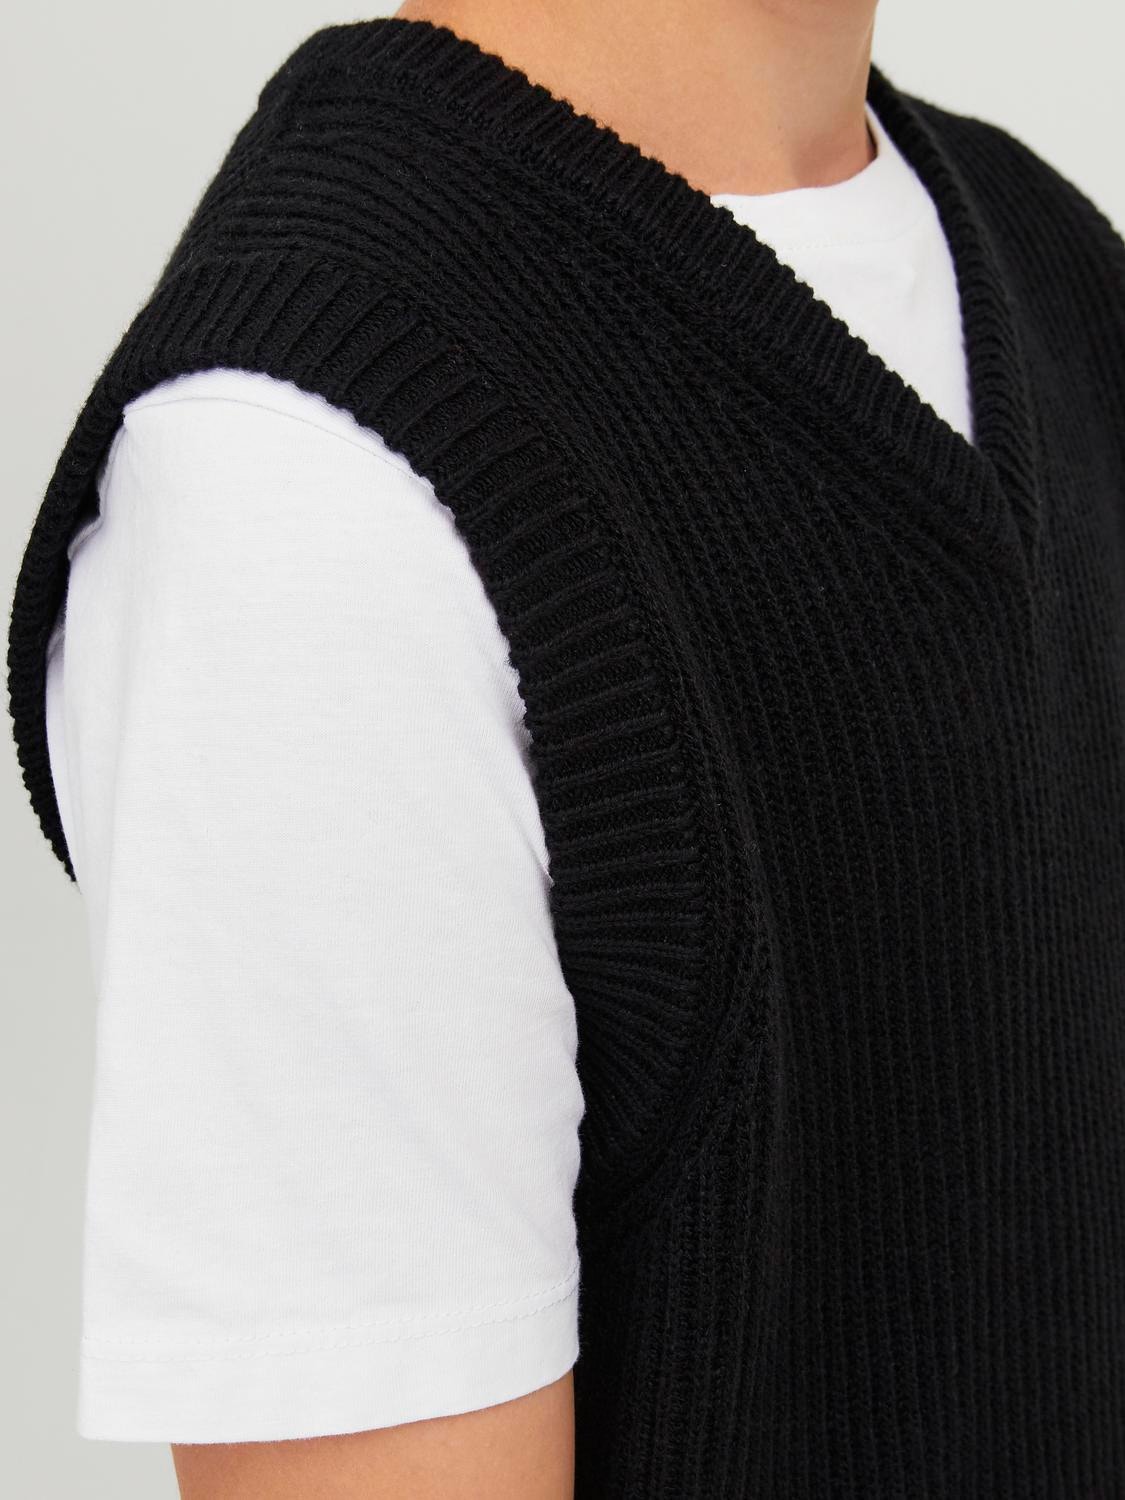 Jack & Jones Knitted vest For boys -Black - 12242059